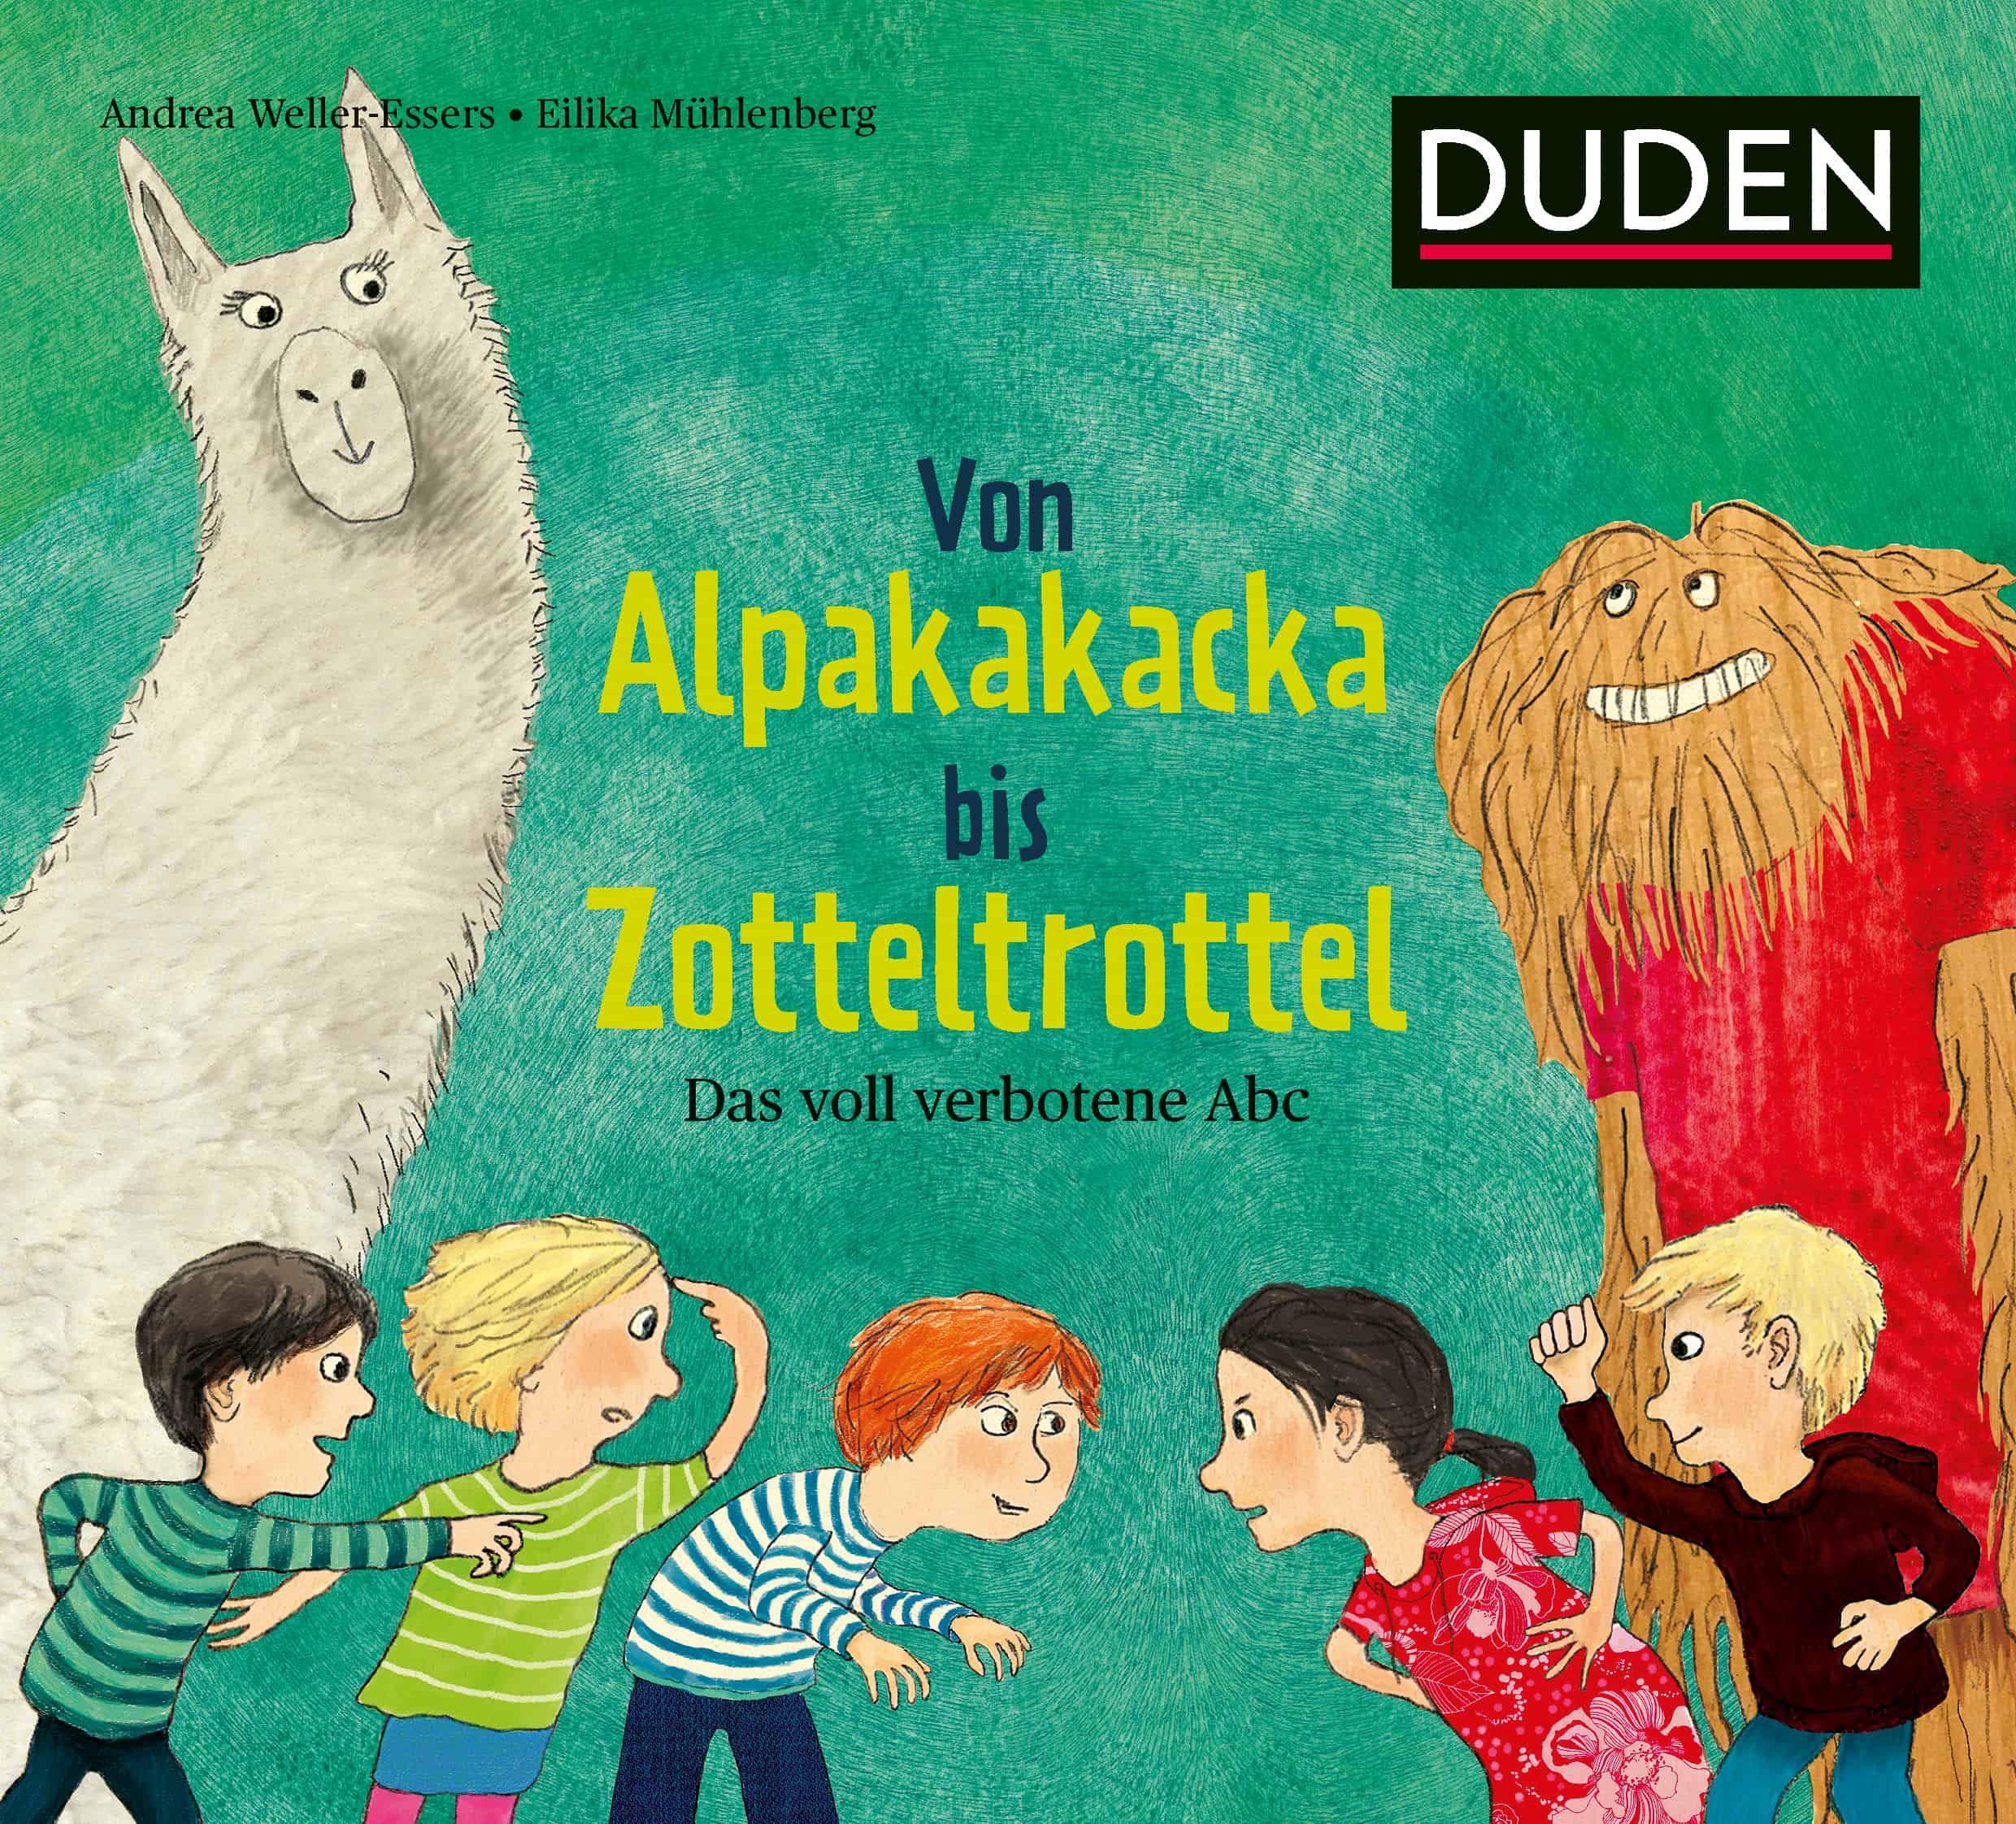 Weller-Essers, Andrea (Text) / Mühlenberg, Eilika (Illustration): Von Alpakakacka bis Zotteltrottel. Das voll verbotene Abc